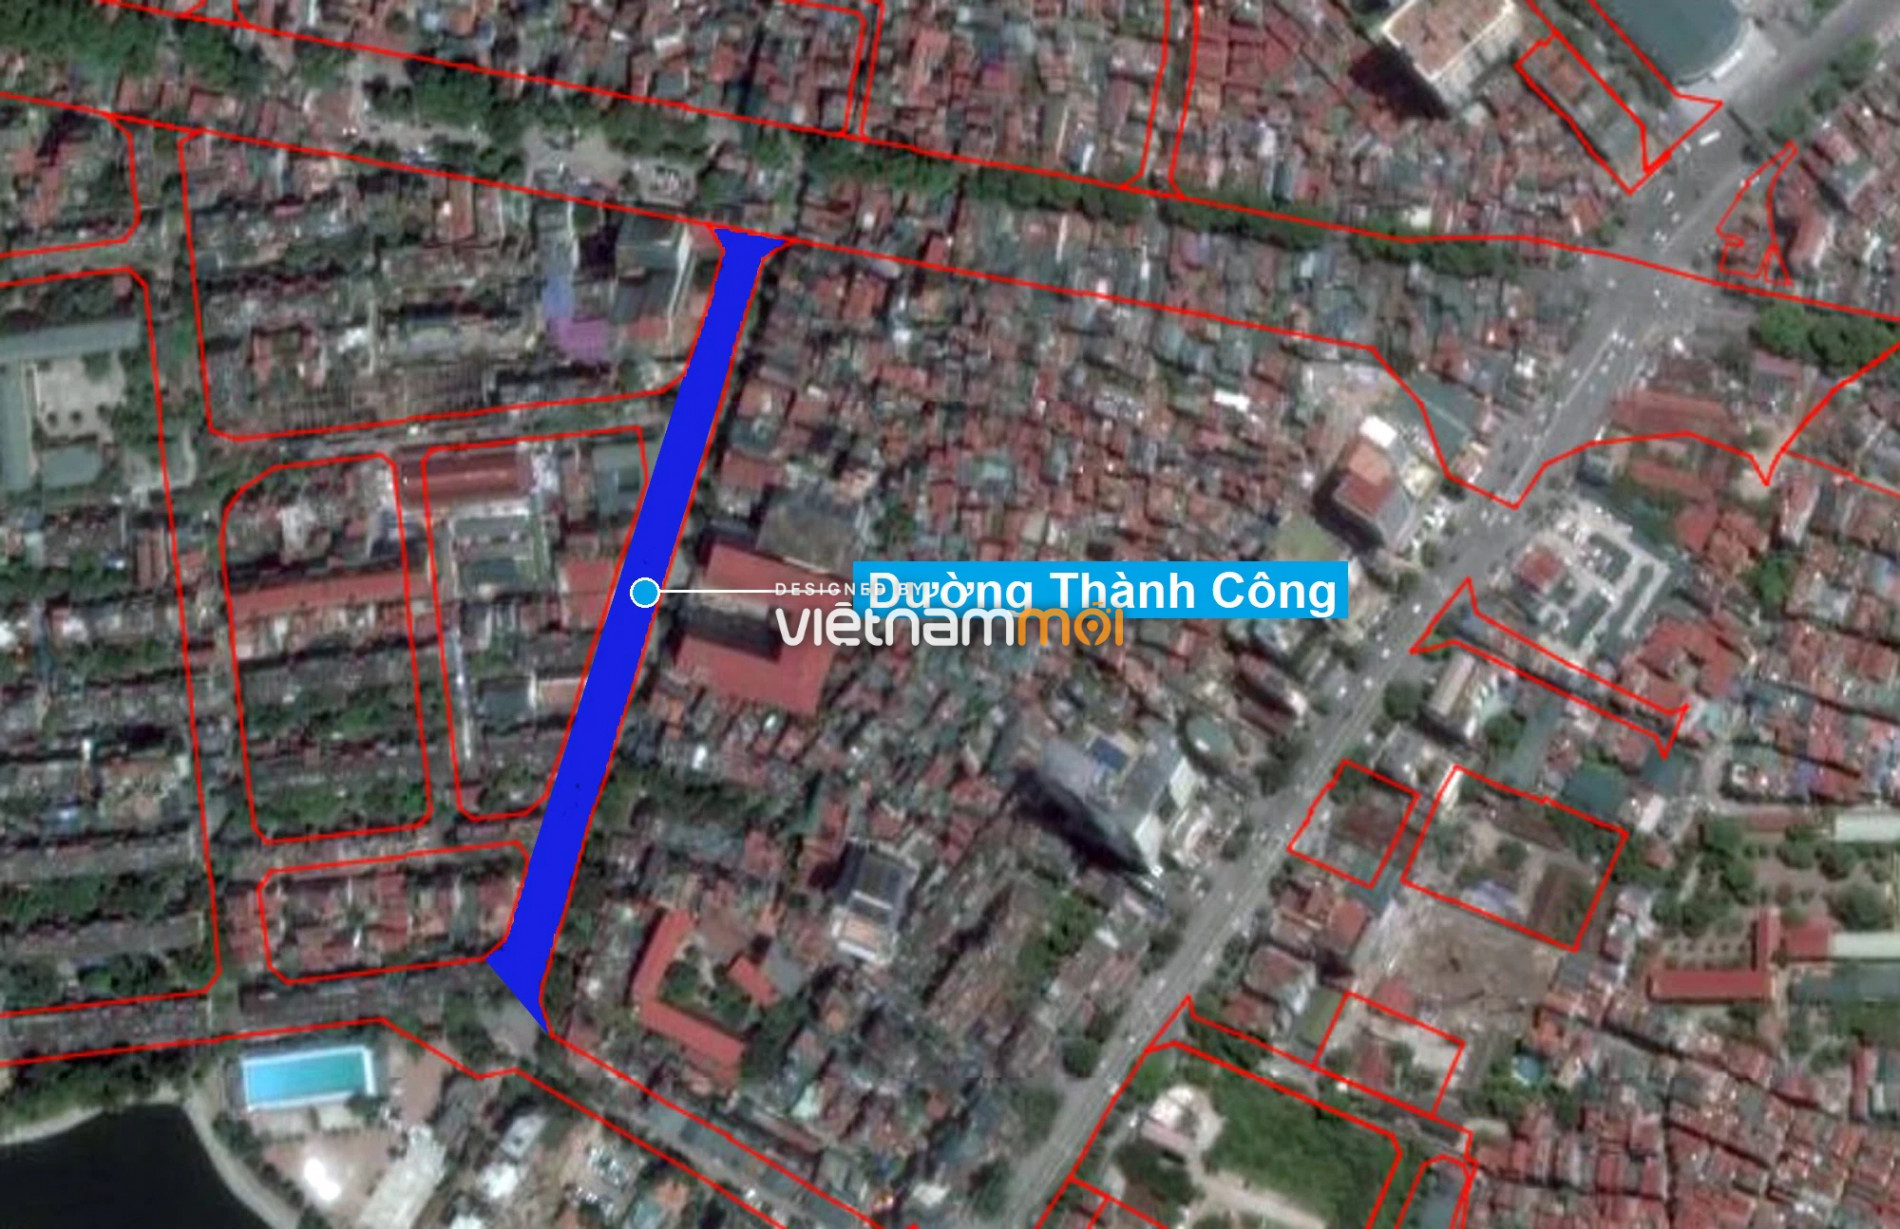 Những khu đất sắp thu hồi để mở đường ở phường Thành Công, Ba Đình, Hà Nội (phần 2) - Ảnh 3.